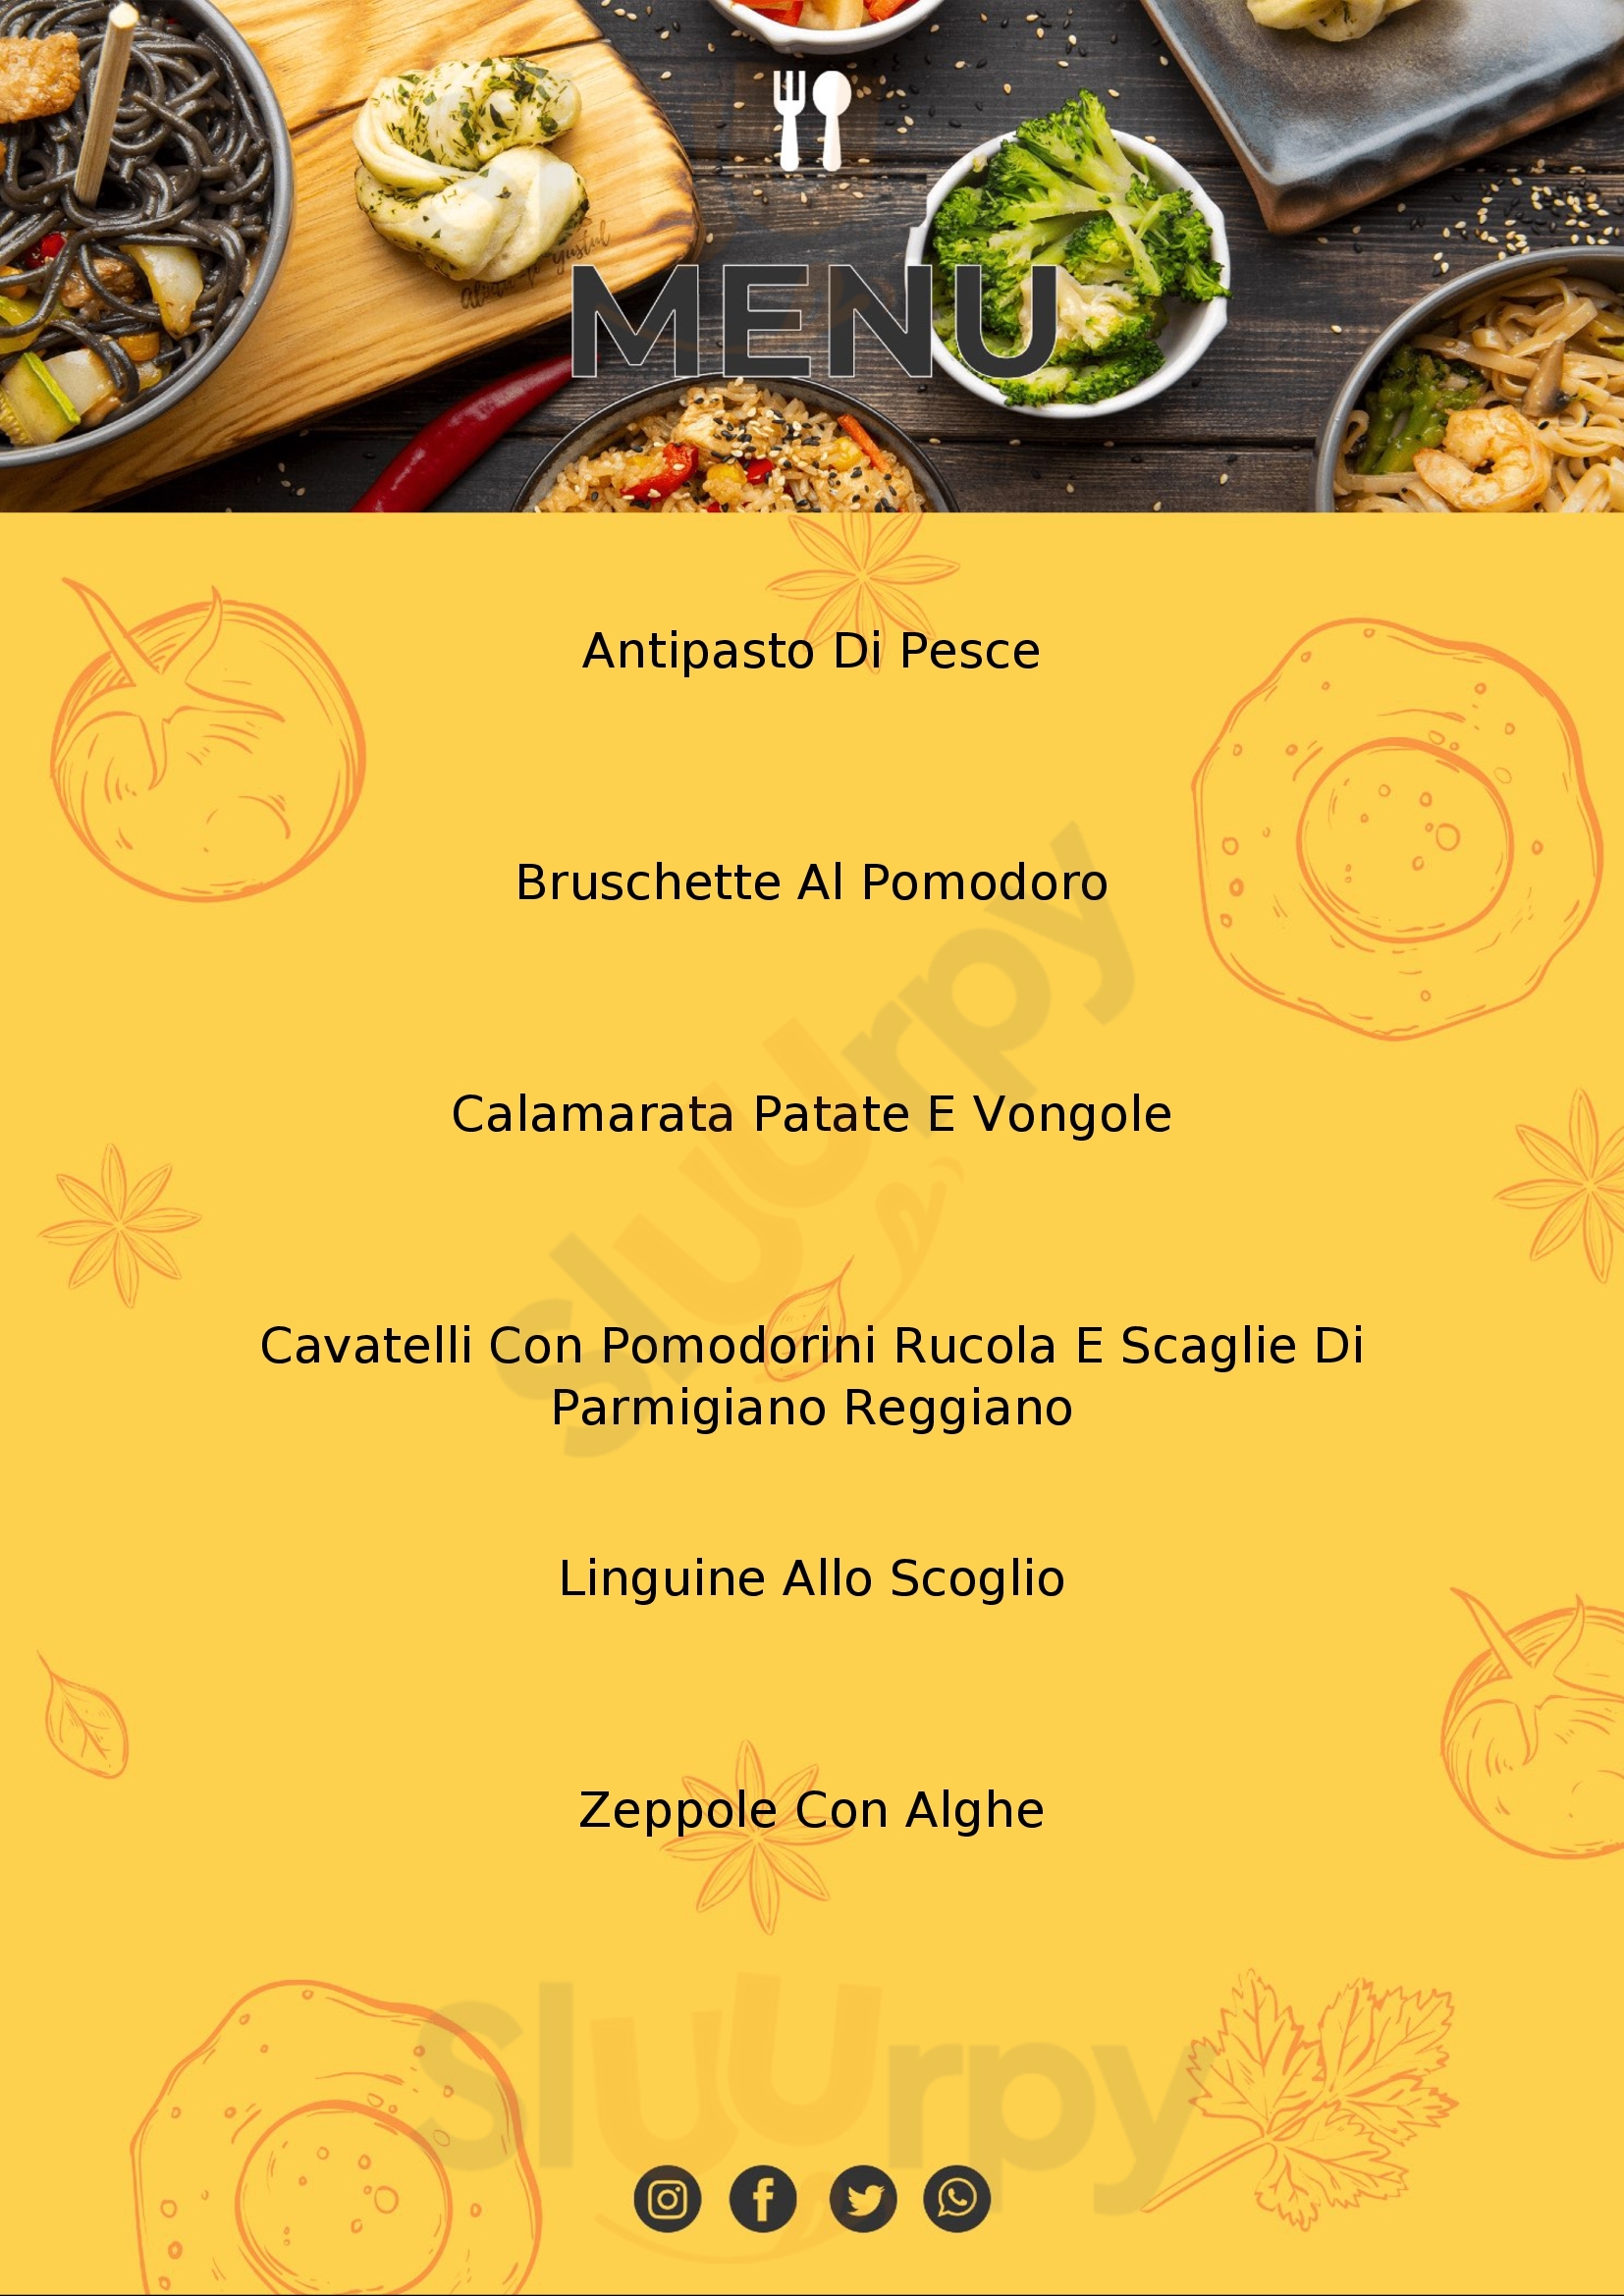 chalet ristorante "Addo Scugnizz" Castellammare Di Stabia menù 1 pagina